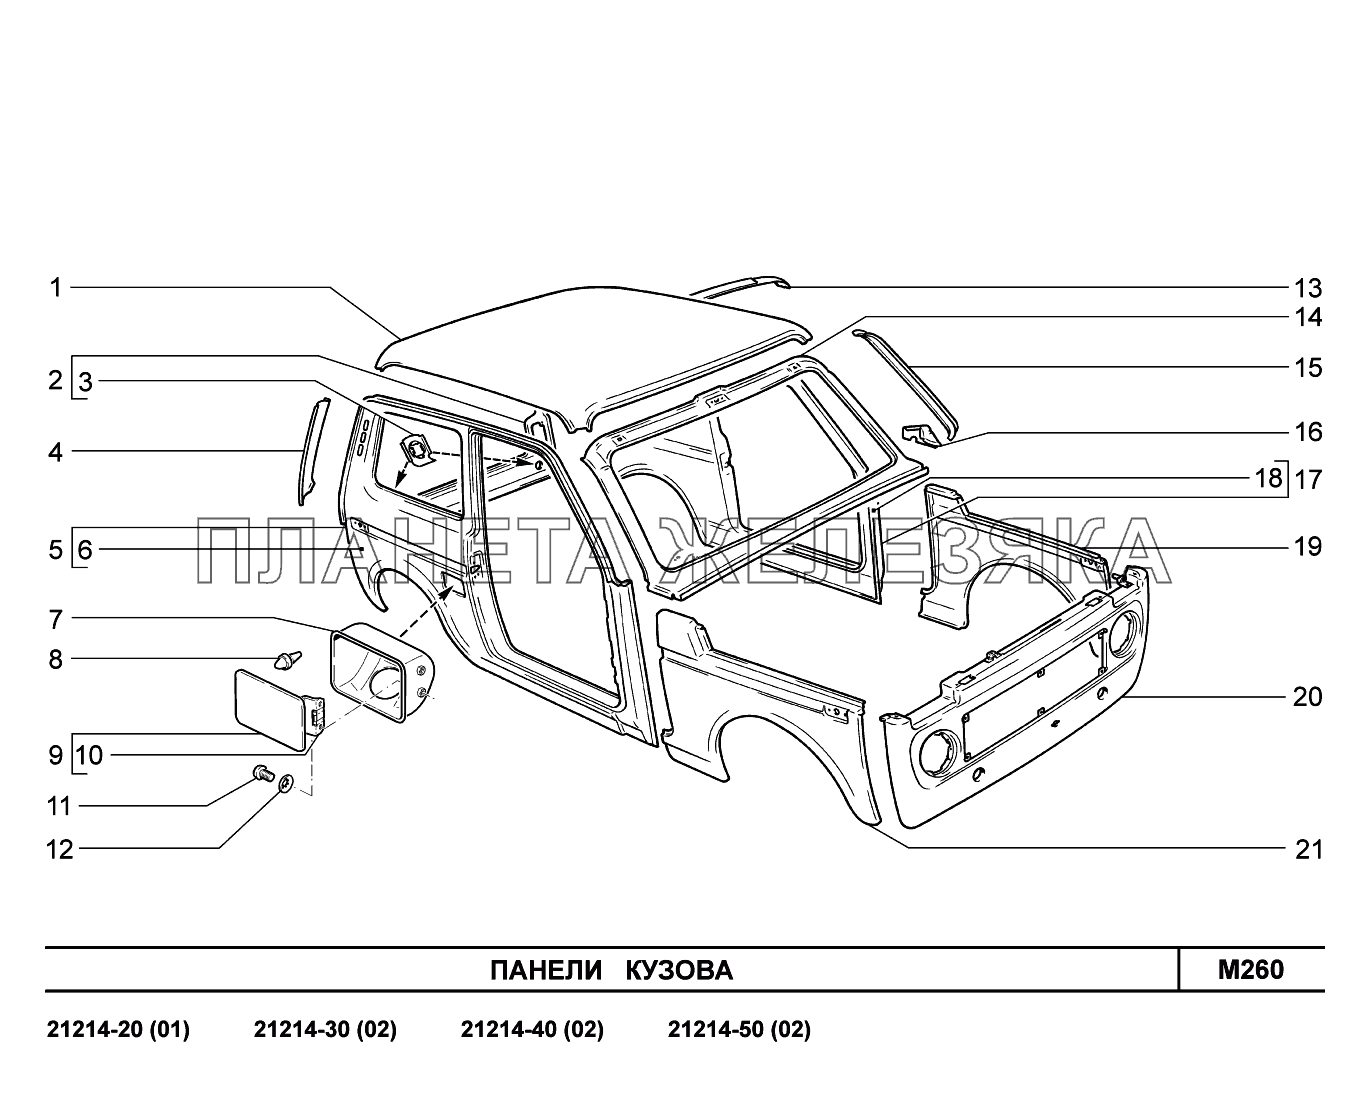 M260. Панели кузова LADA 4x4